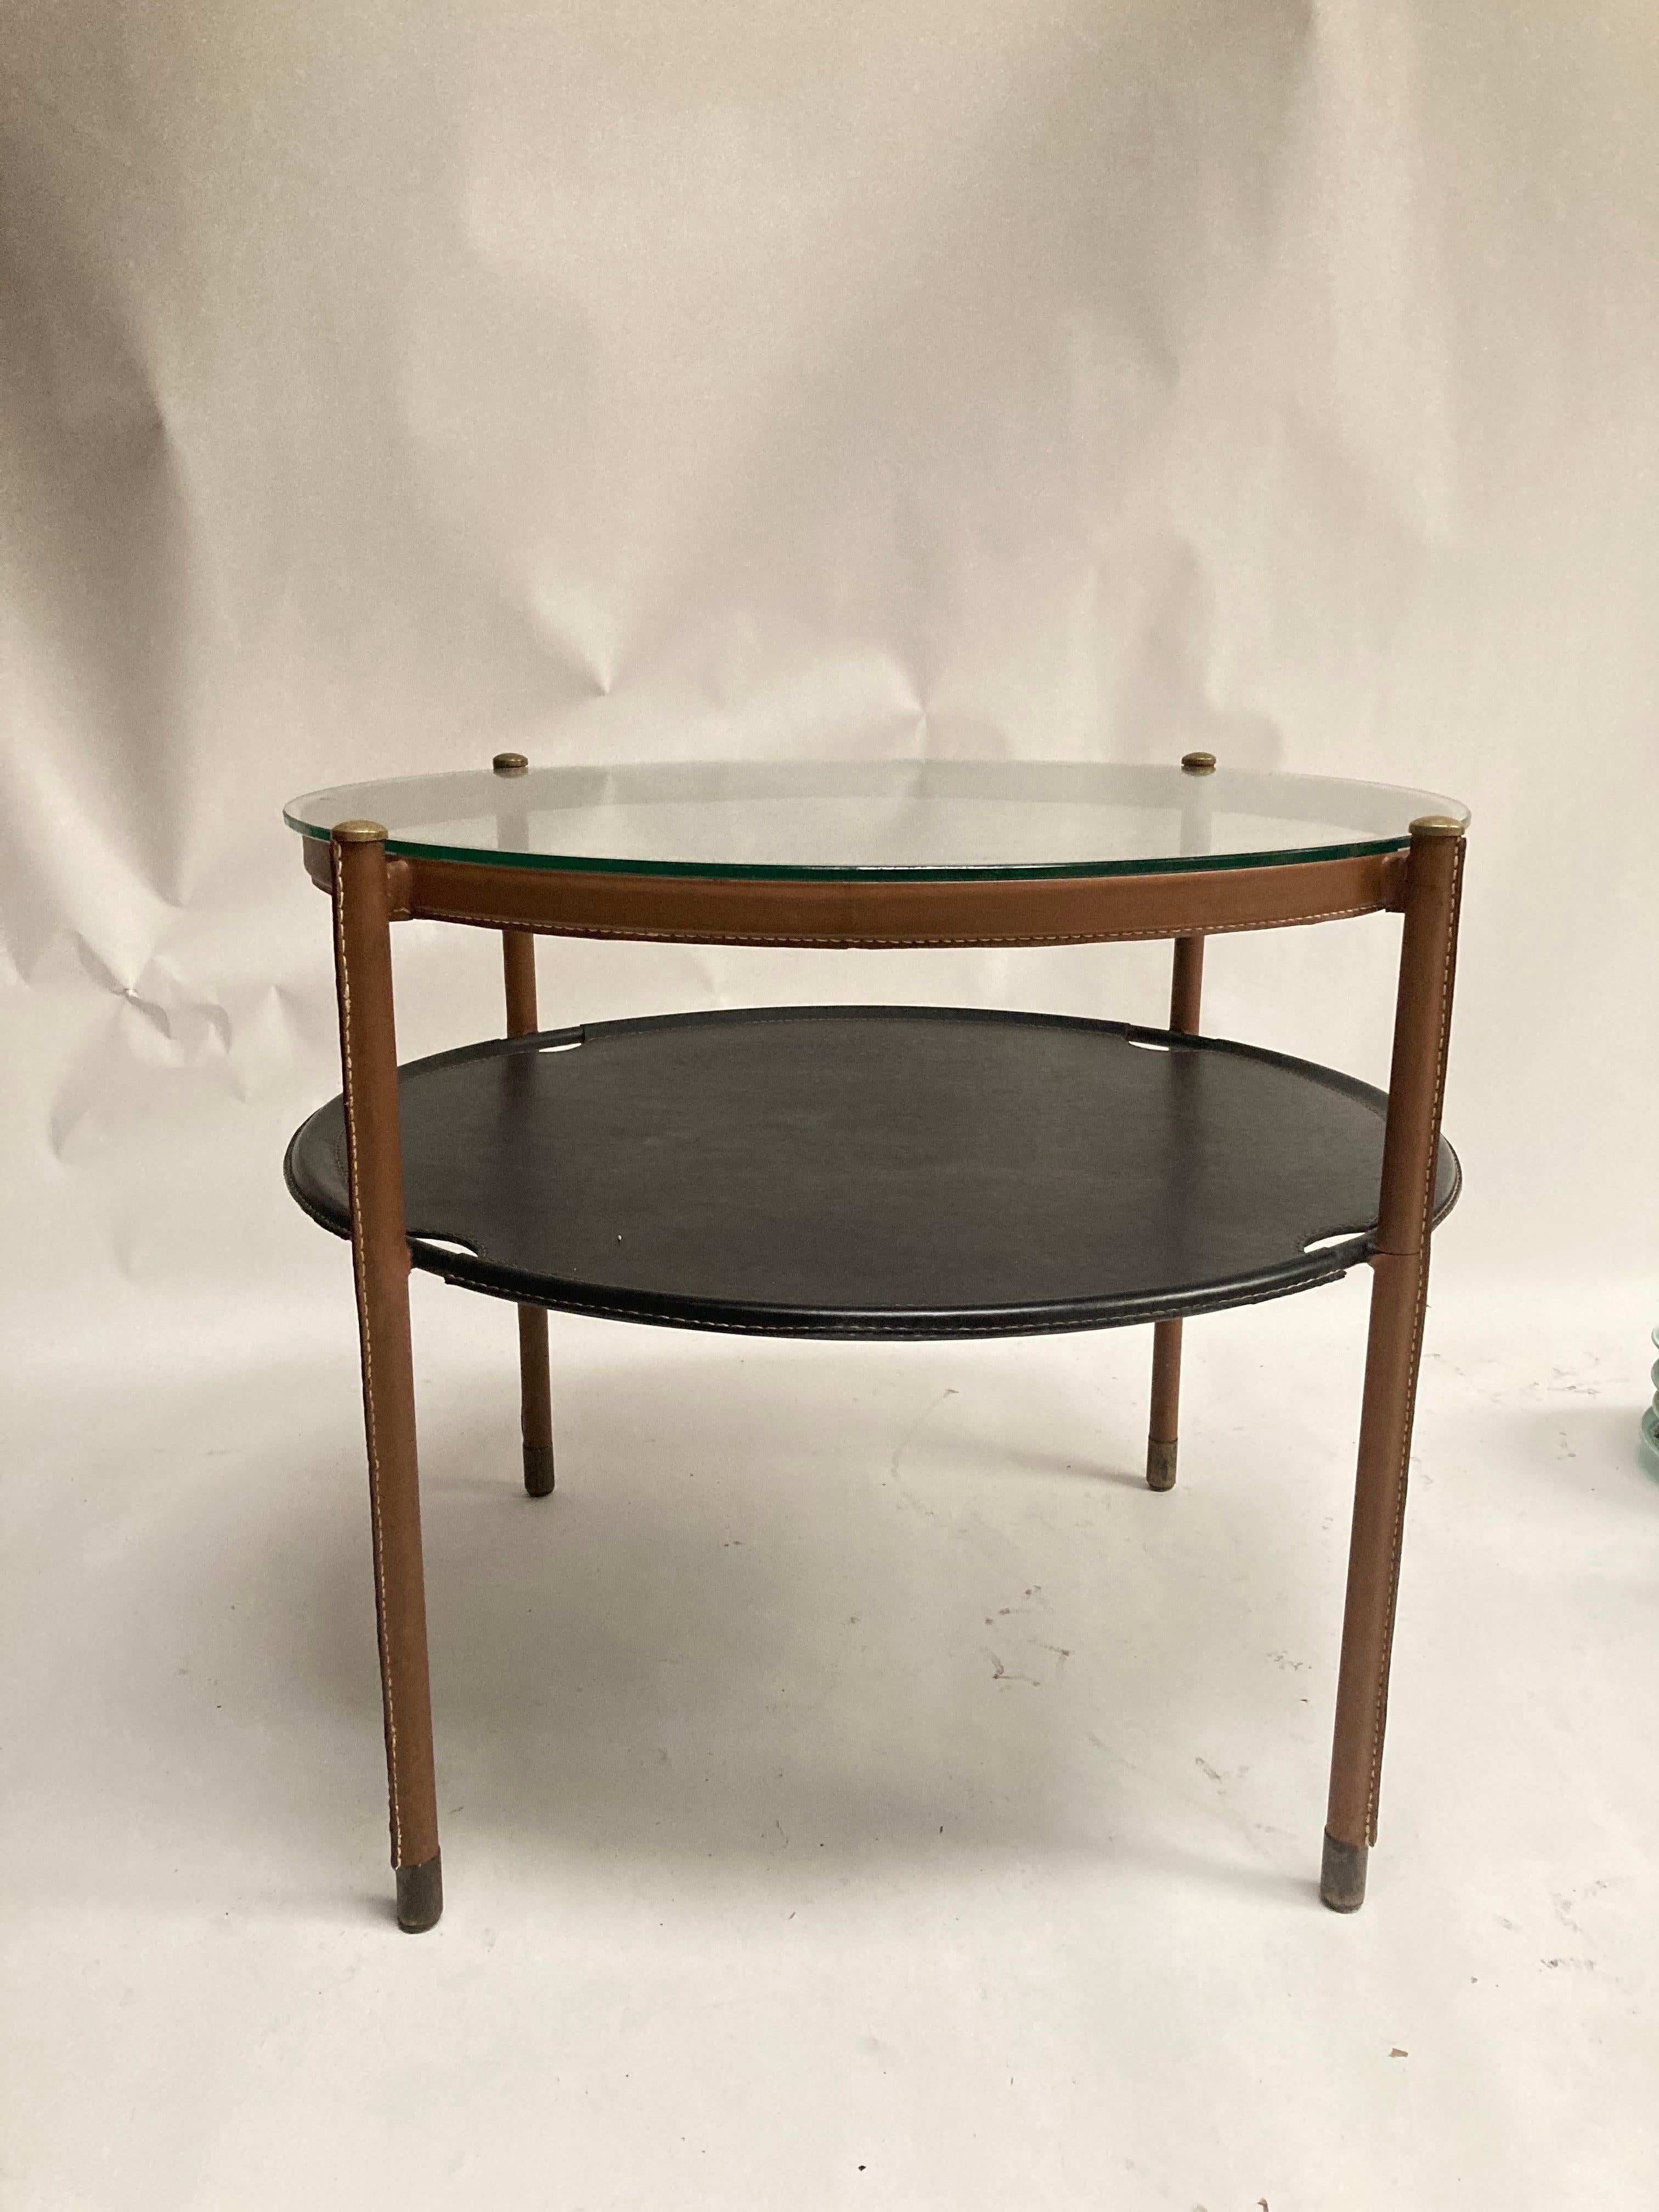 Rare table en cuir cousu de Jacques Adnet
Modèle peu répandu 
Grandes dimensions.